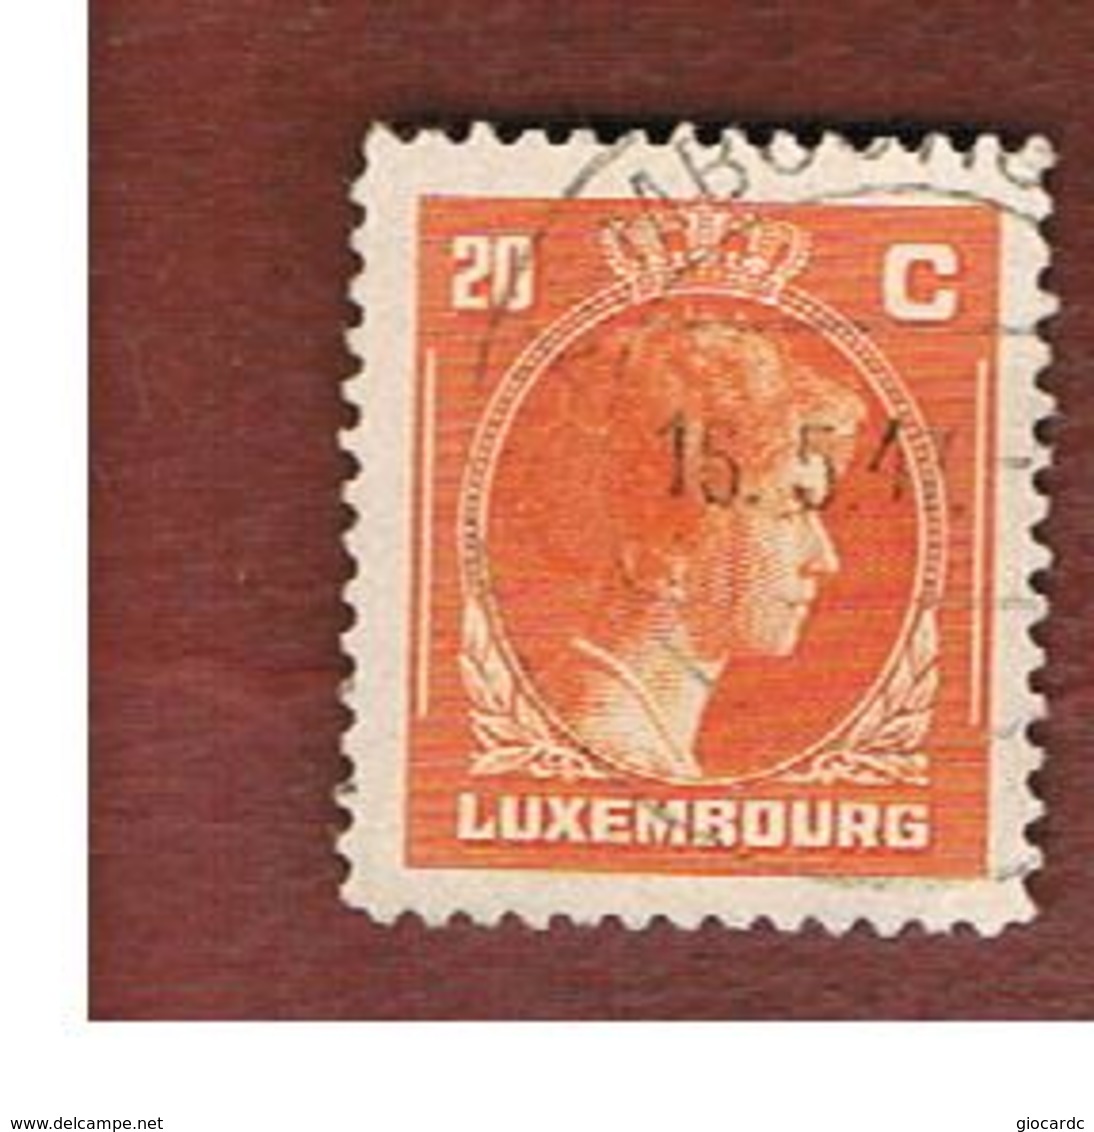 LUSSEMBURGO (LUXEMBOURG)   -   SG  440    -   1946 GRAND DUCHESS  CHARLOTTE 20  -   USED - 1944 Charlotte De Profil à Droite